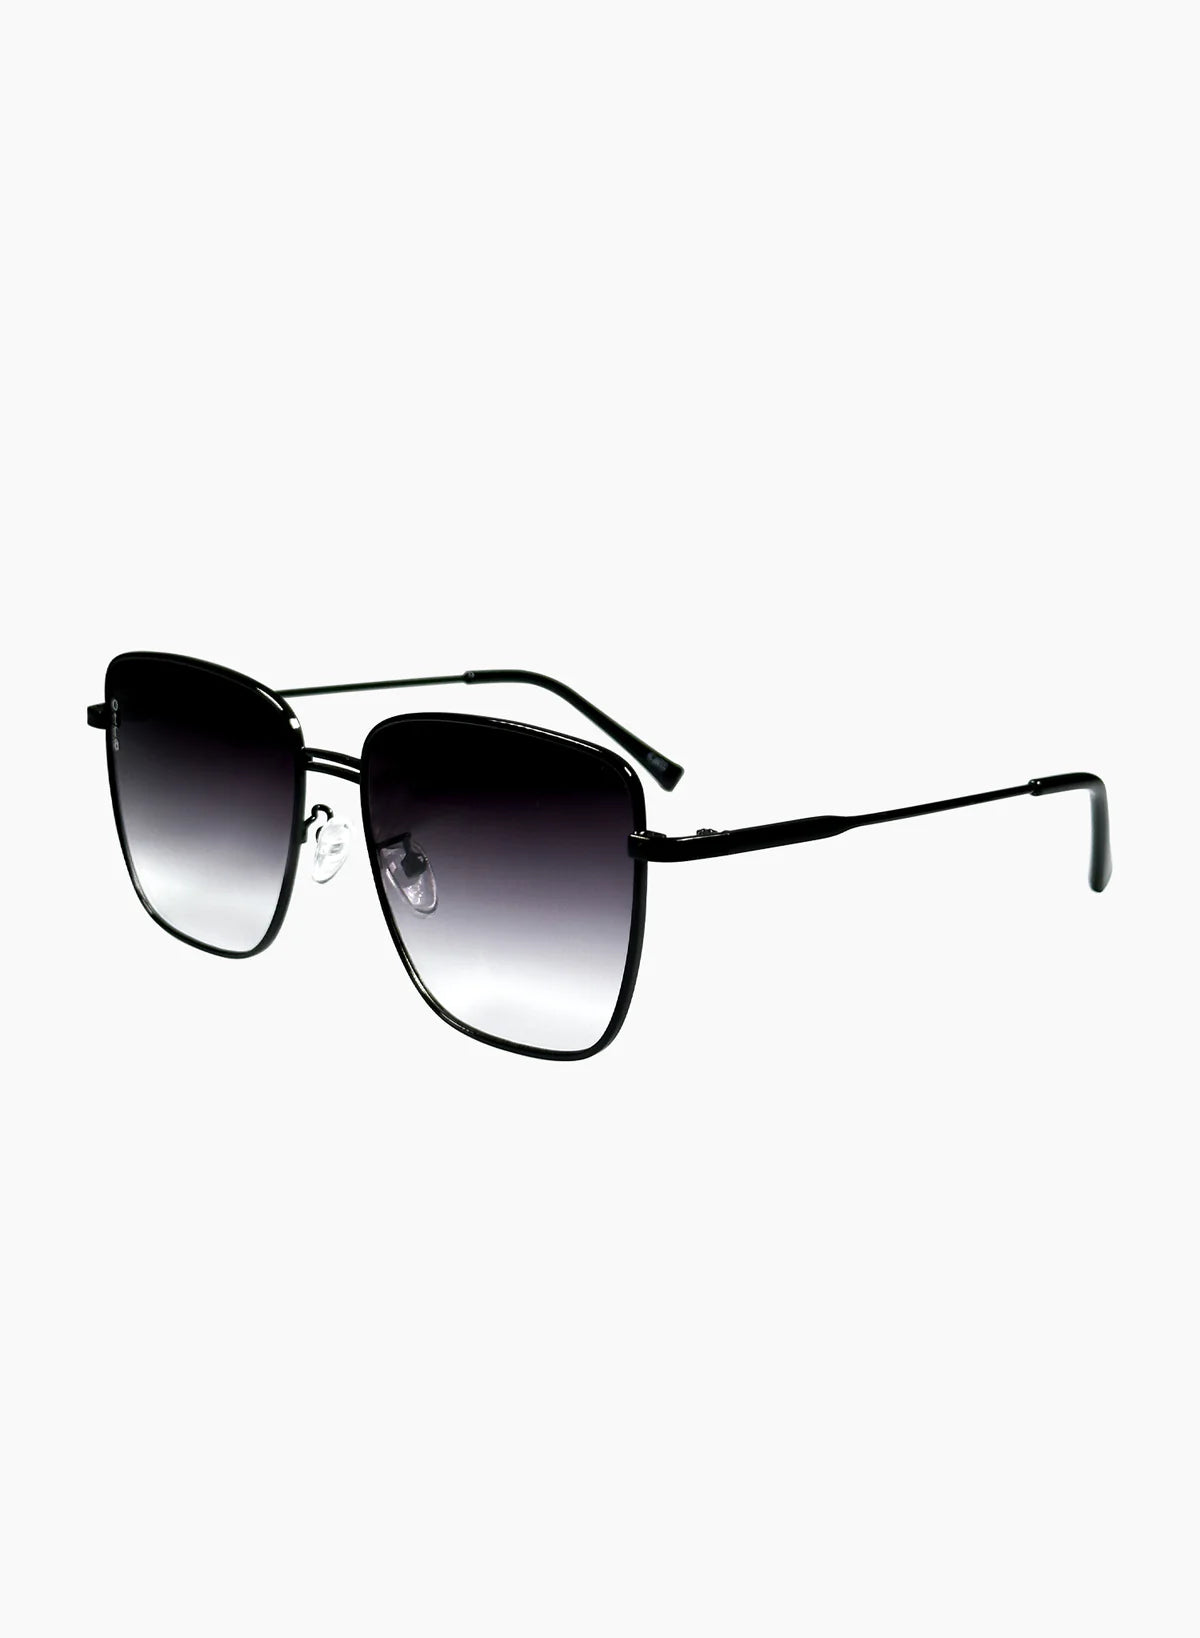 Rita Sunglasses Black, Sunglass Acc by Otra | LIT Boutique